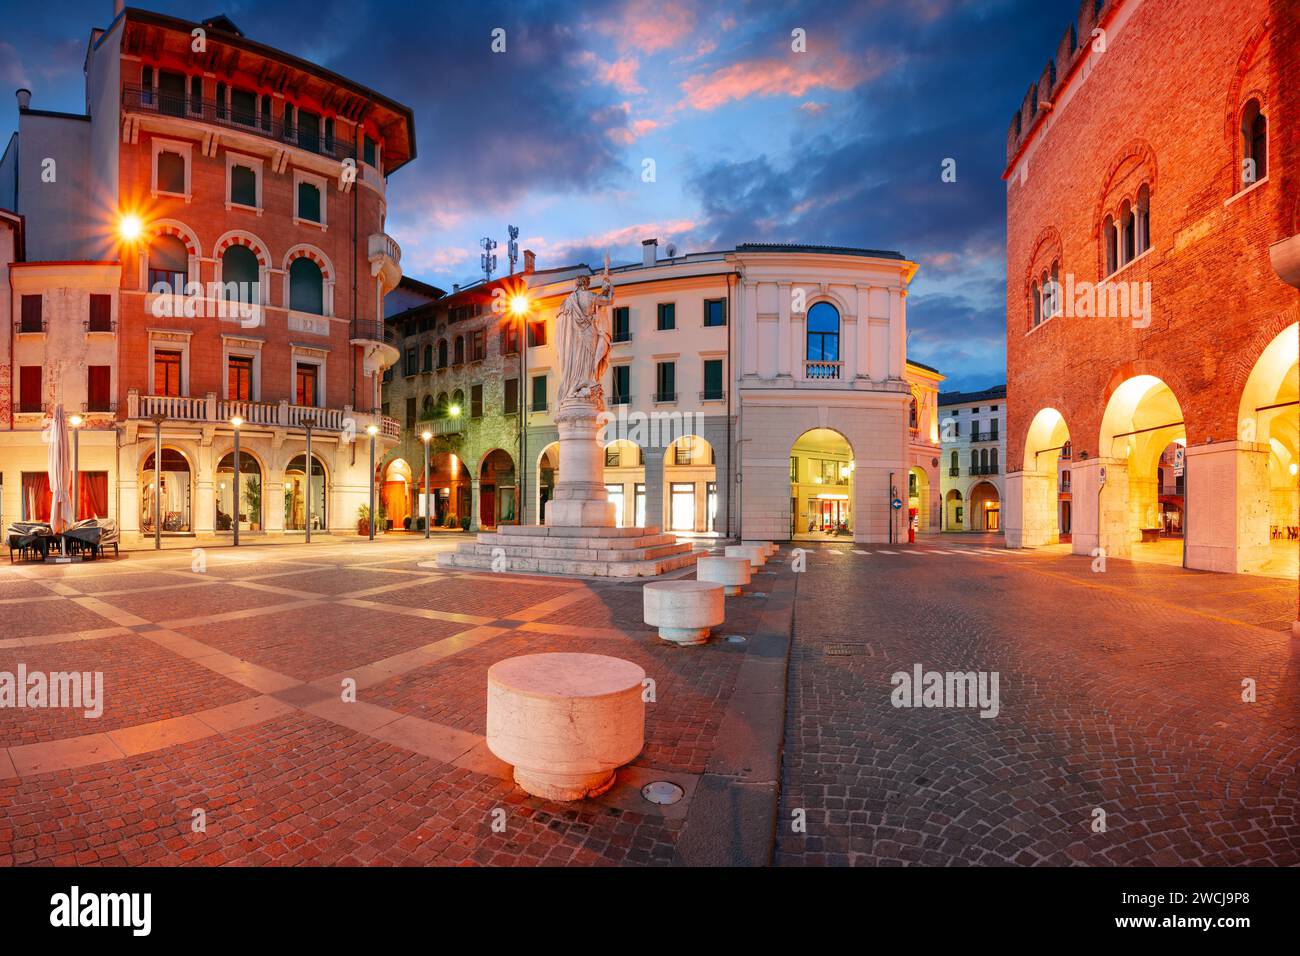 Treviso, Italien. Stadtbild des historischen Zentrums von Treviso, Italien mit dem alten Platz bei Sonnenaufgang. Stockfoto